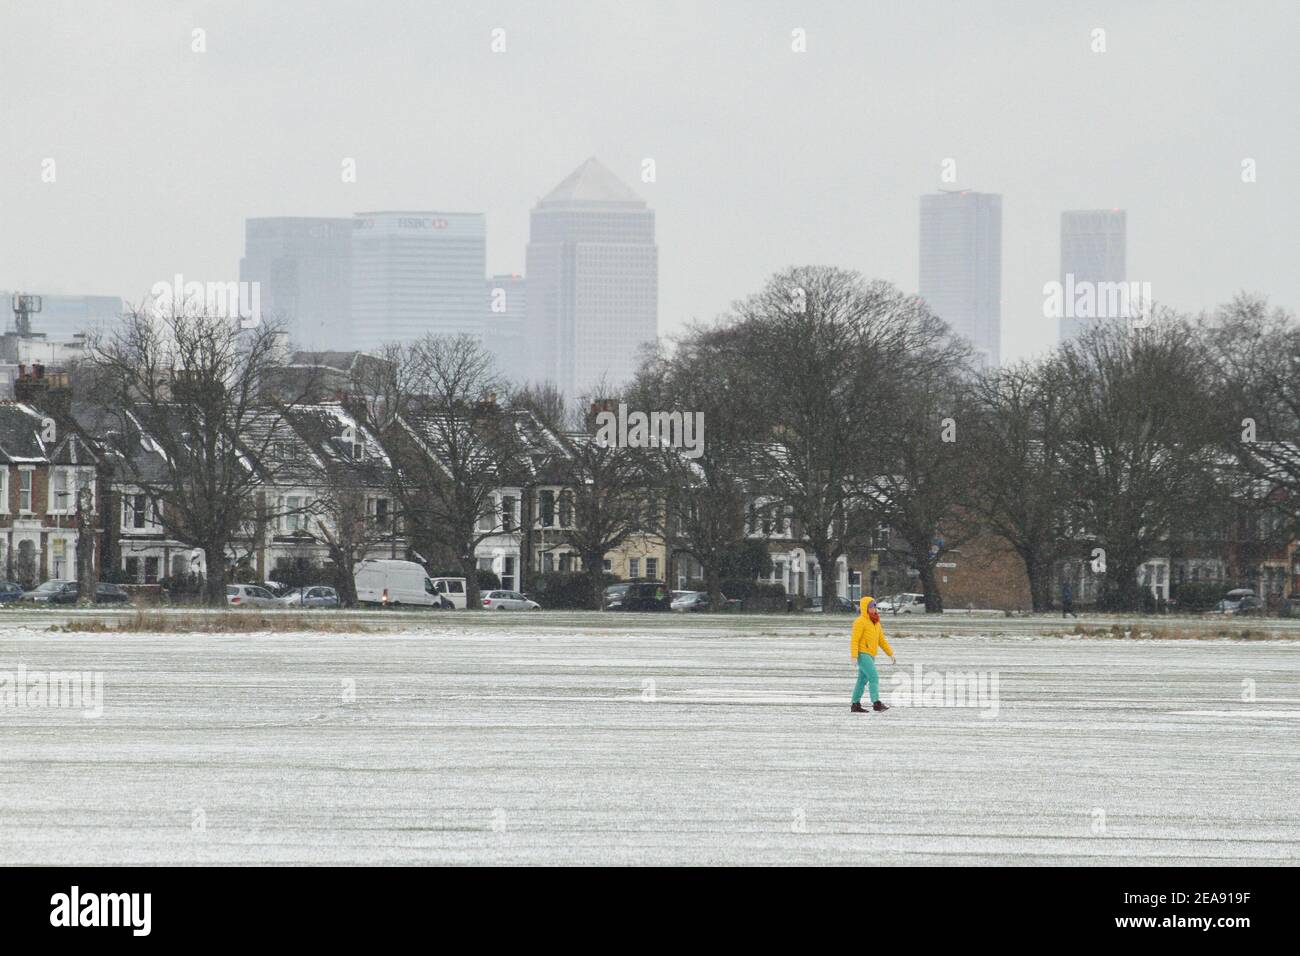 Ein Mann geht über einen schneebedeckten Wanstead Park mit einer Kulisse der Isle of Dogs Wolkenkratzer. Schwerer Schnee und Eis haben Teile des Vereinigten Königreichs gestört, und London erhielt etwa 5cm Schnee. Die starken Ostwinde des Sturms Darcy haben die Temperaturen in Teilen Großbritanniens auf unter minus eins gesunken. Stockfoto